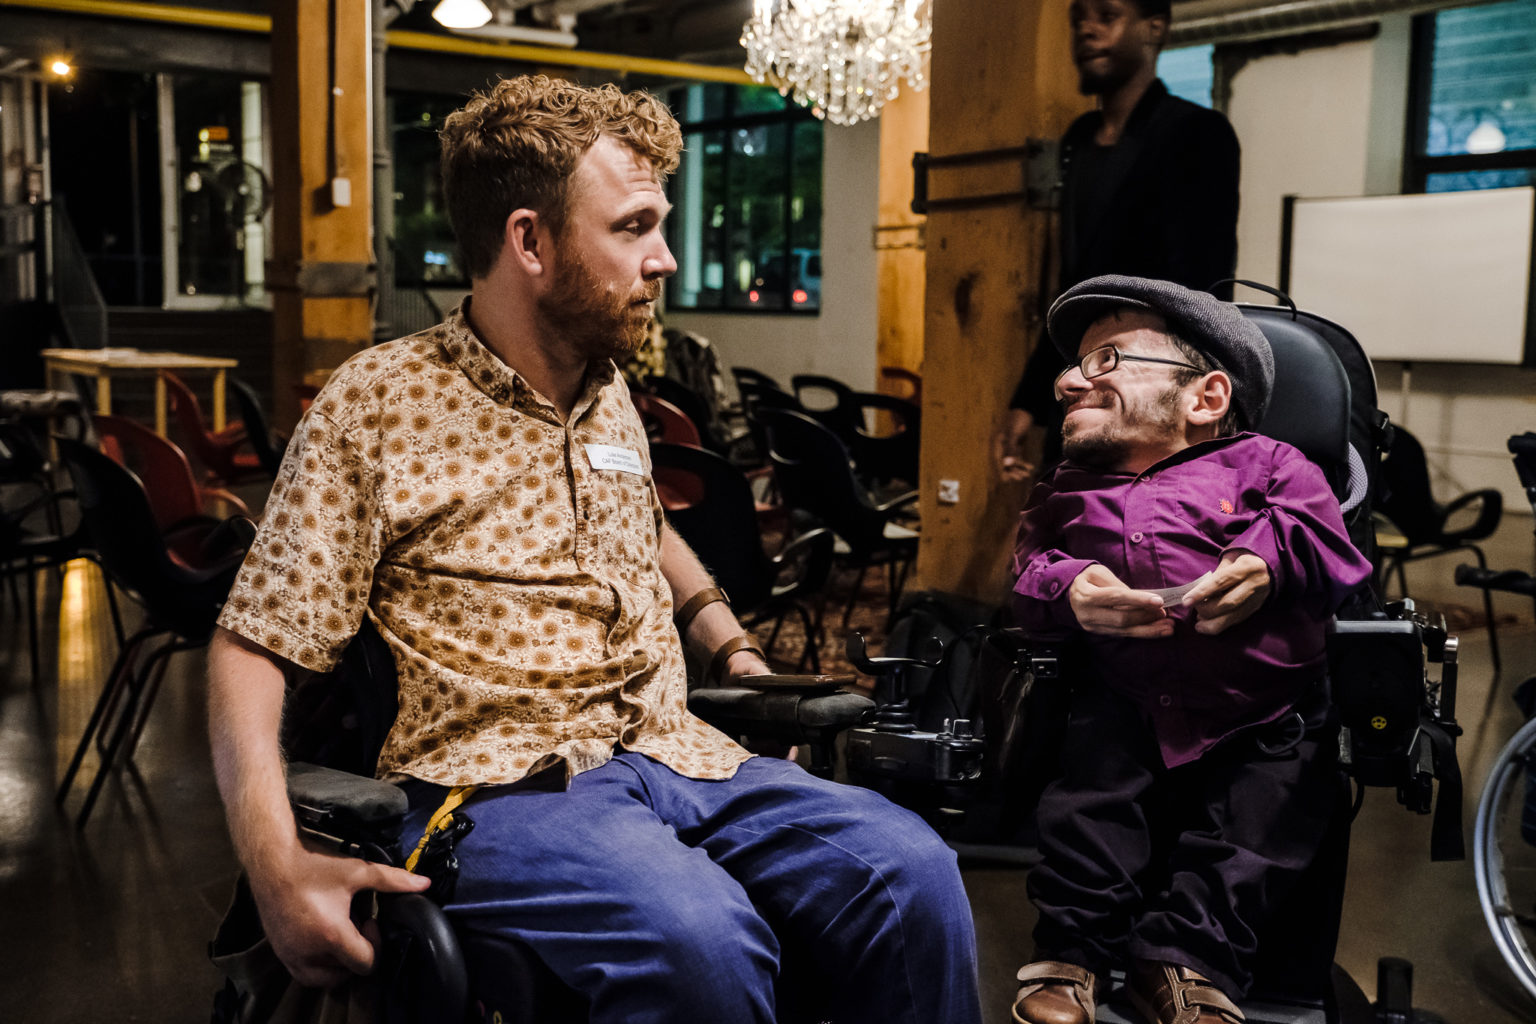 Raul Krauthausen im Rollsuhl mit einem anderen Rollstuhlfahrer unterhalten sich in einem leeren Event-Raum. Im Hintergrund stühle. Raul lächelt.